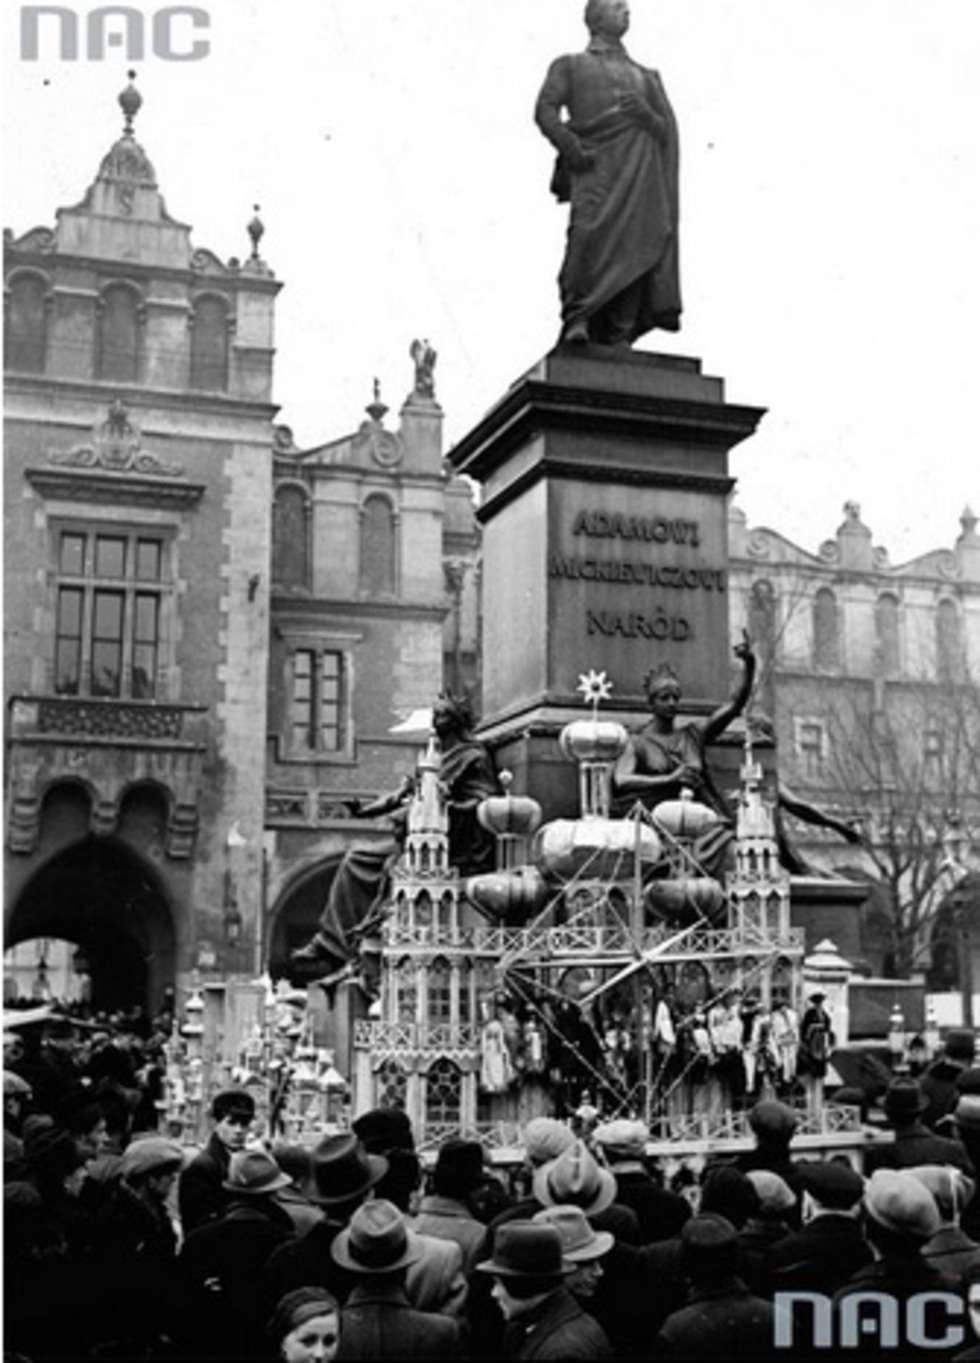  Sprzedaż (lub wystawa) szopek krakowskich pod pomnikiem Adama Mickiewicza na Rynku Głównym w Krakowie. 1938 rok.